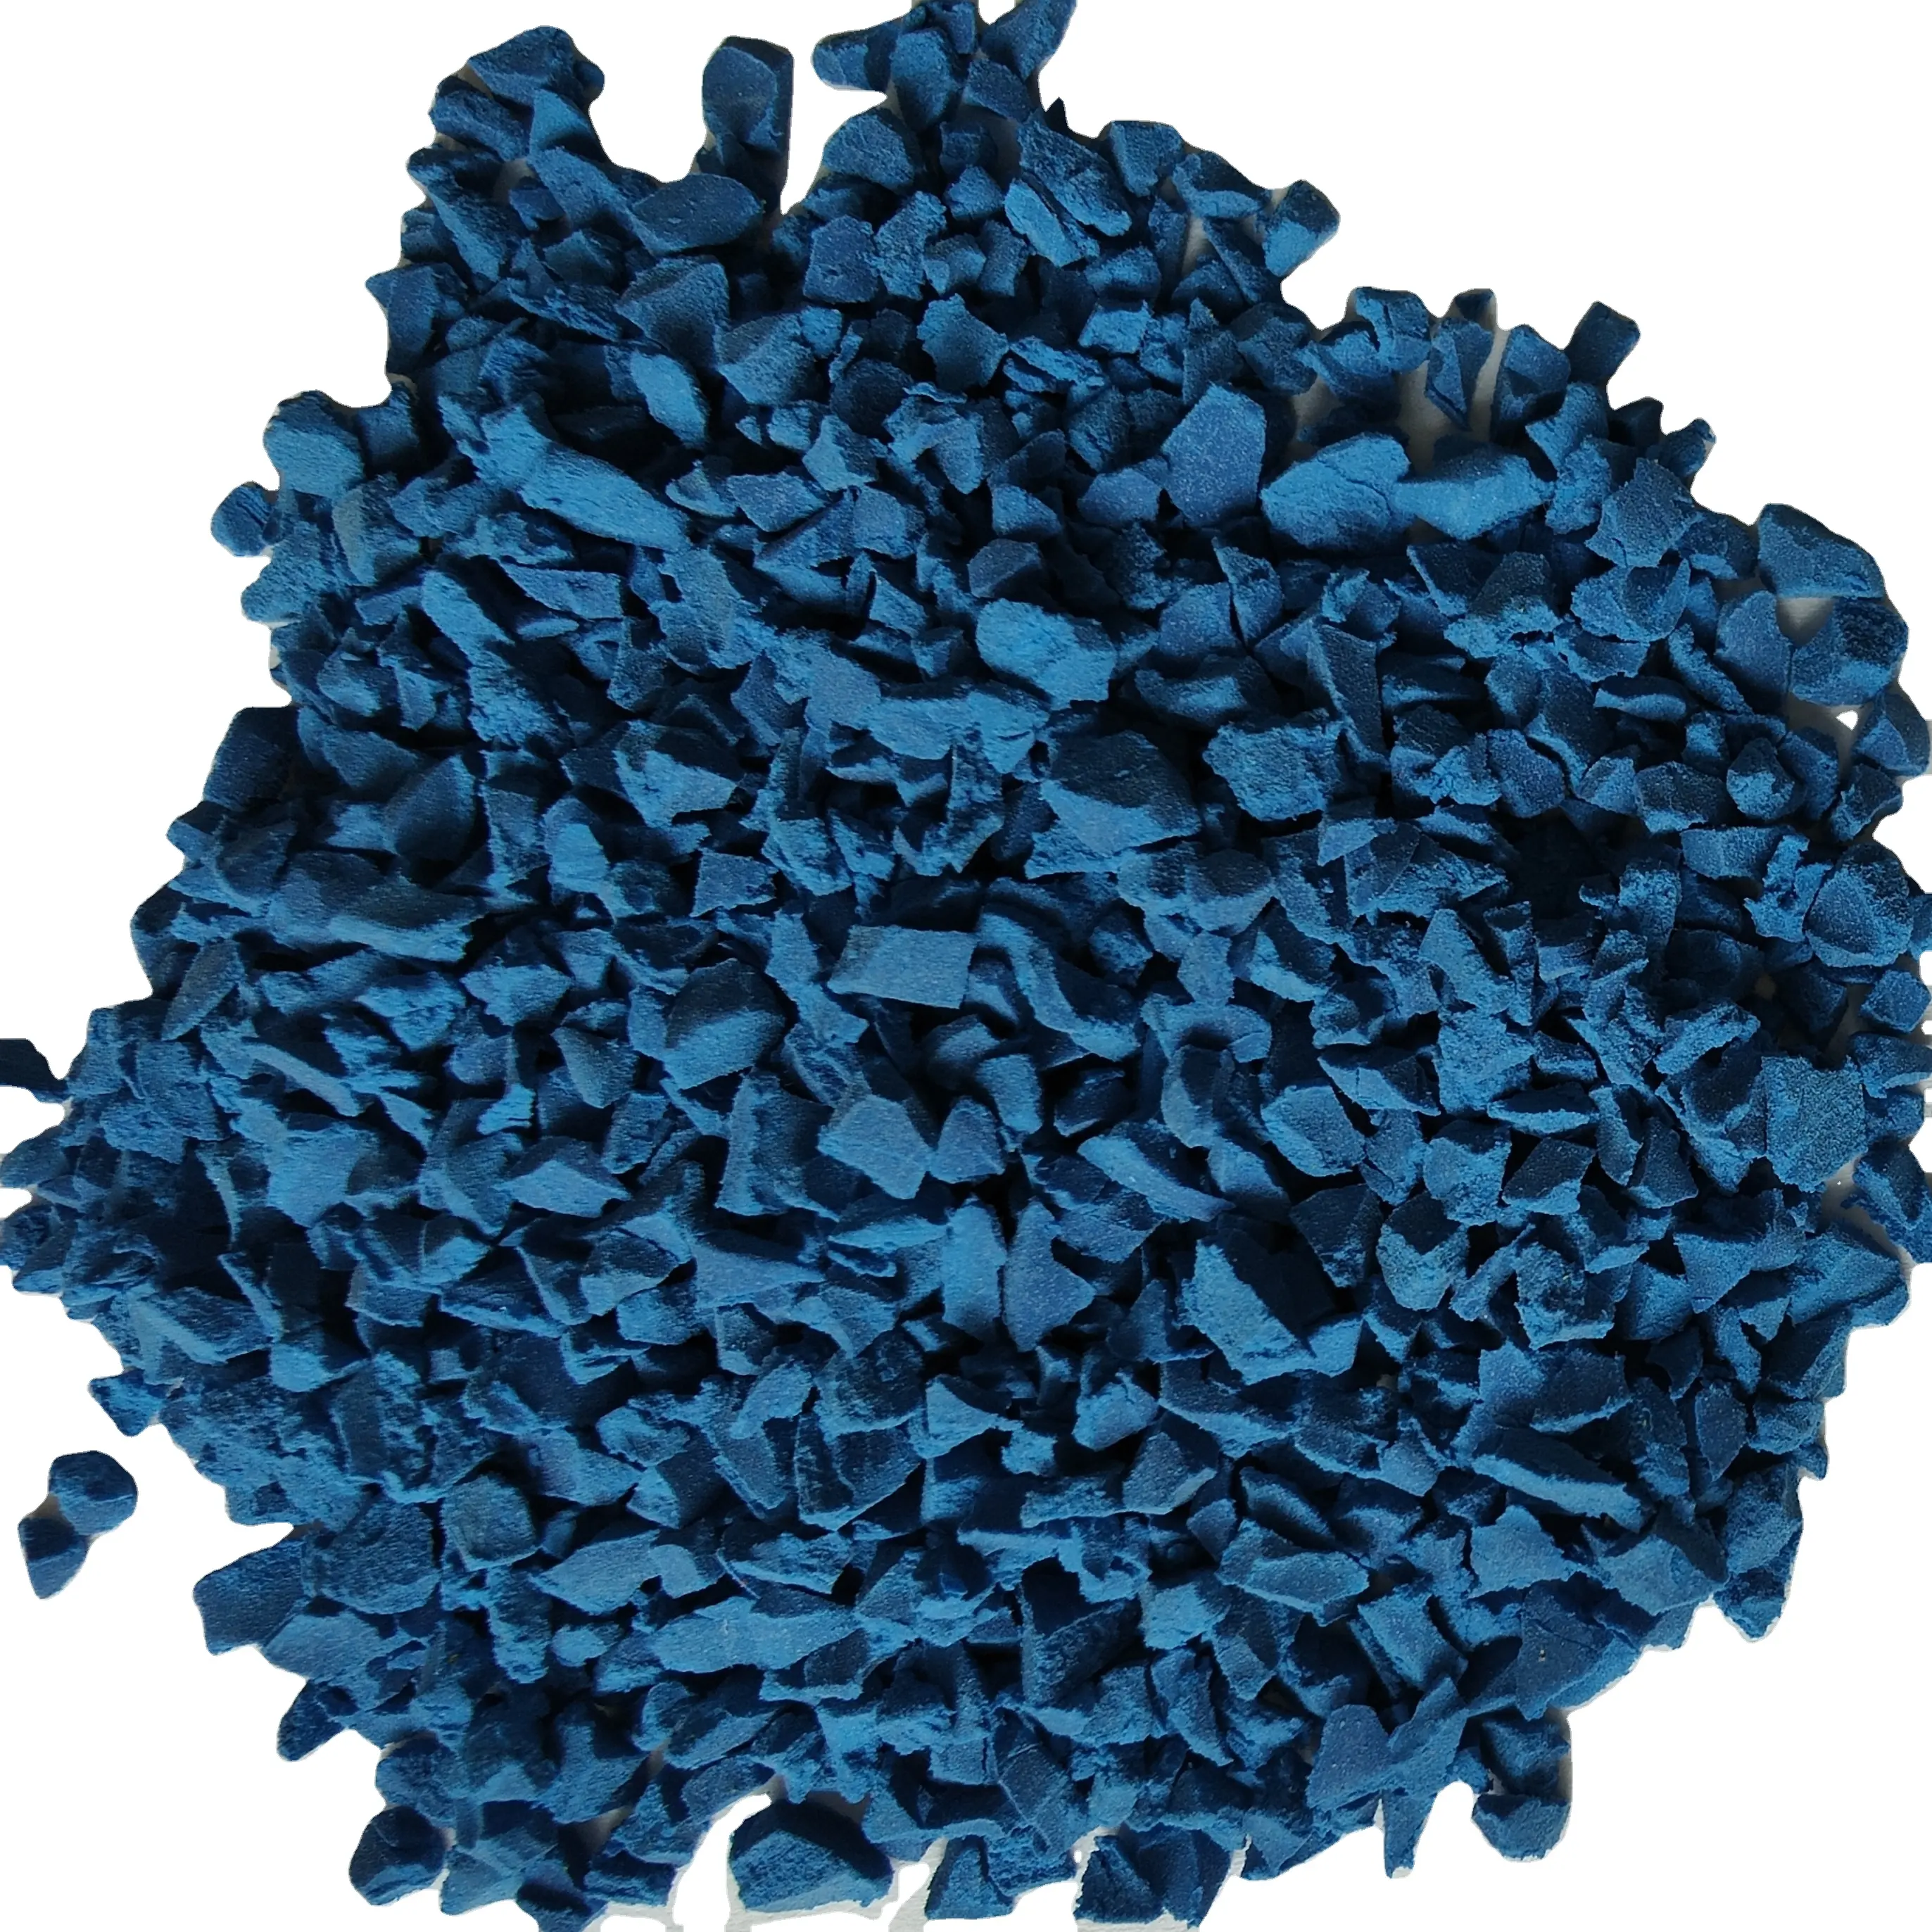 Koyu mavi EPDM kauçuk granüller plastik koşu parça okul oyun alanı yüksek kalite spor kauçuk malzeme üreticisi fiyat